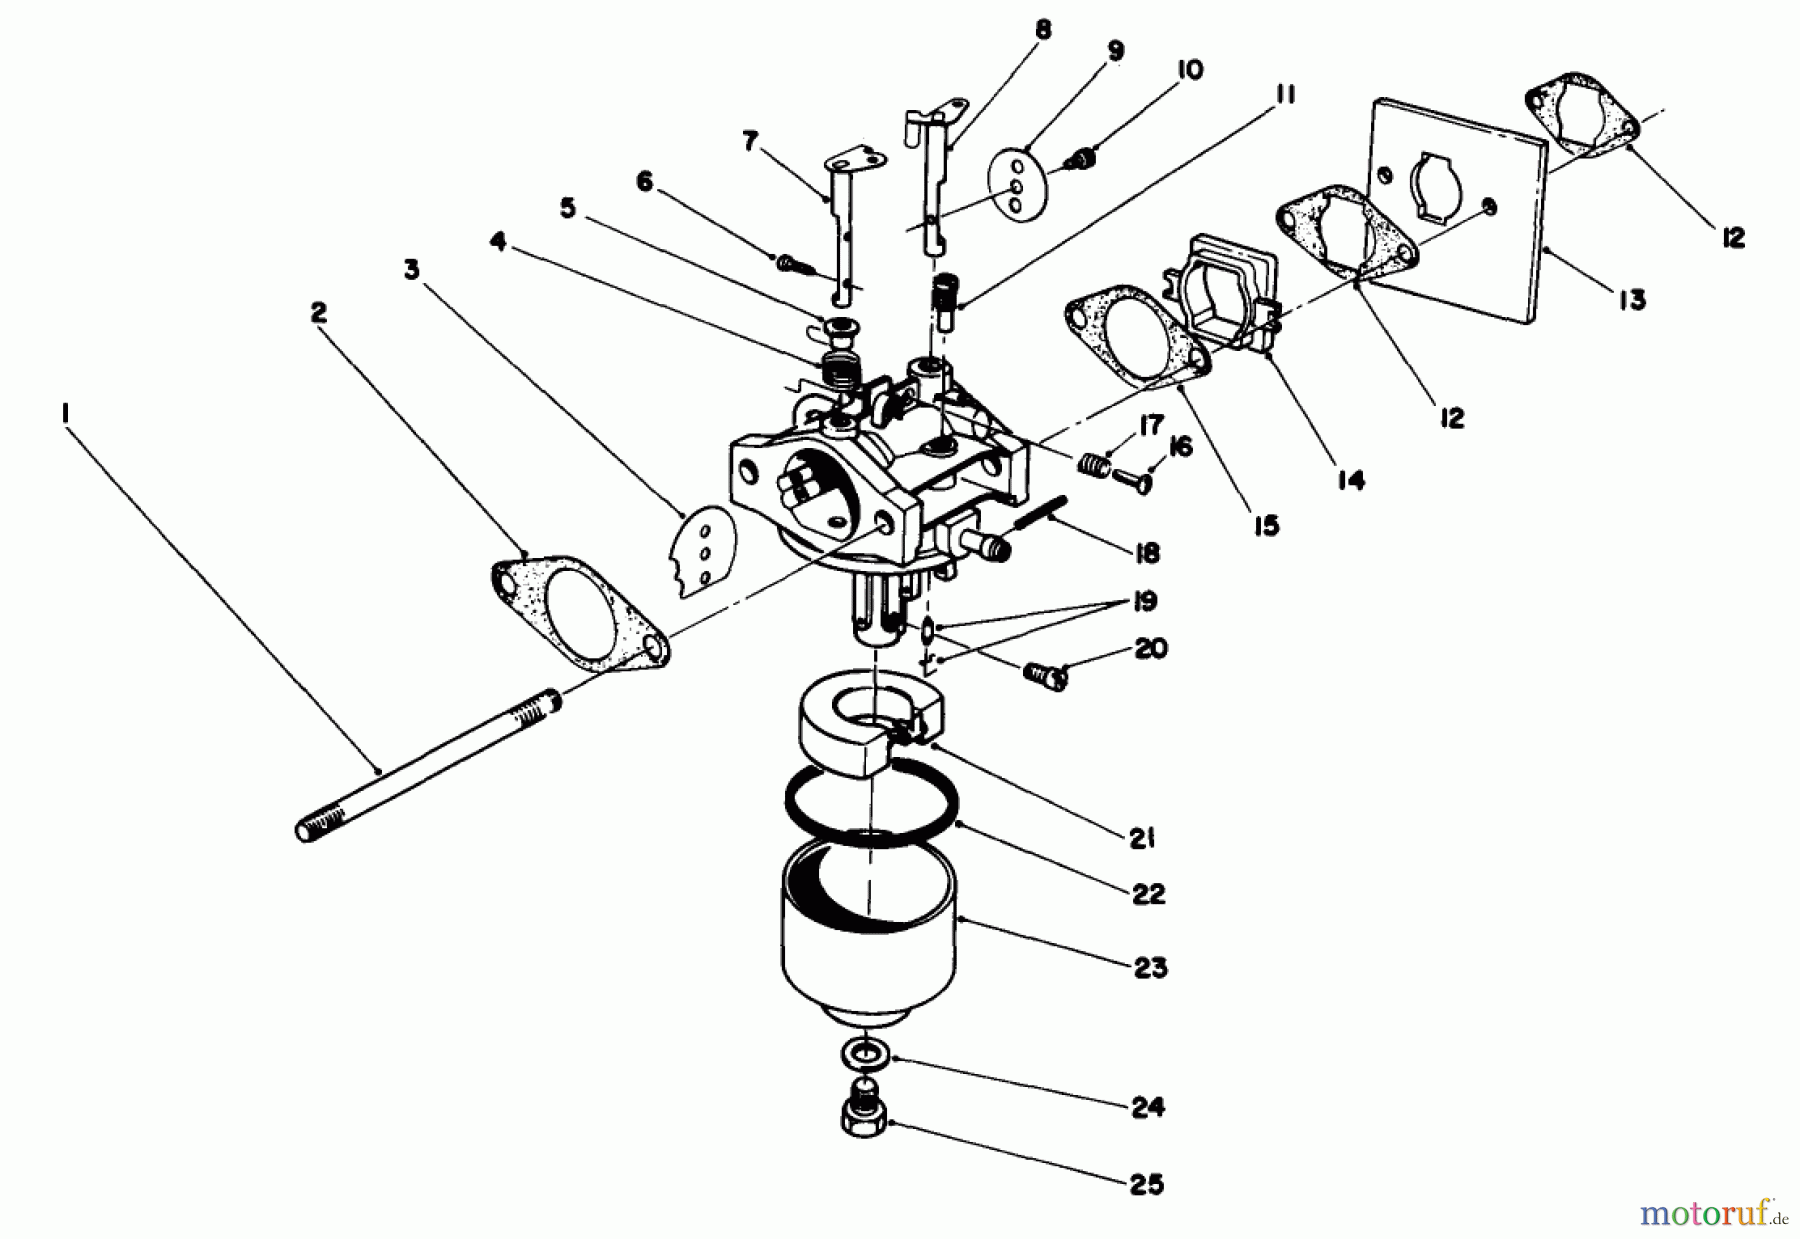  Toro Neu Mowers, Walk-Behind Seite 2 22030 - Toro Lawnmower, 1988 (8000001-8999999) ENGINE ASSEMBLY MODEL NO. 47PH7 #3